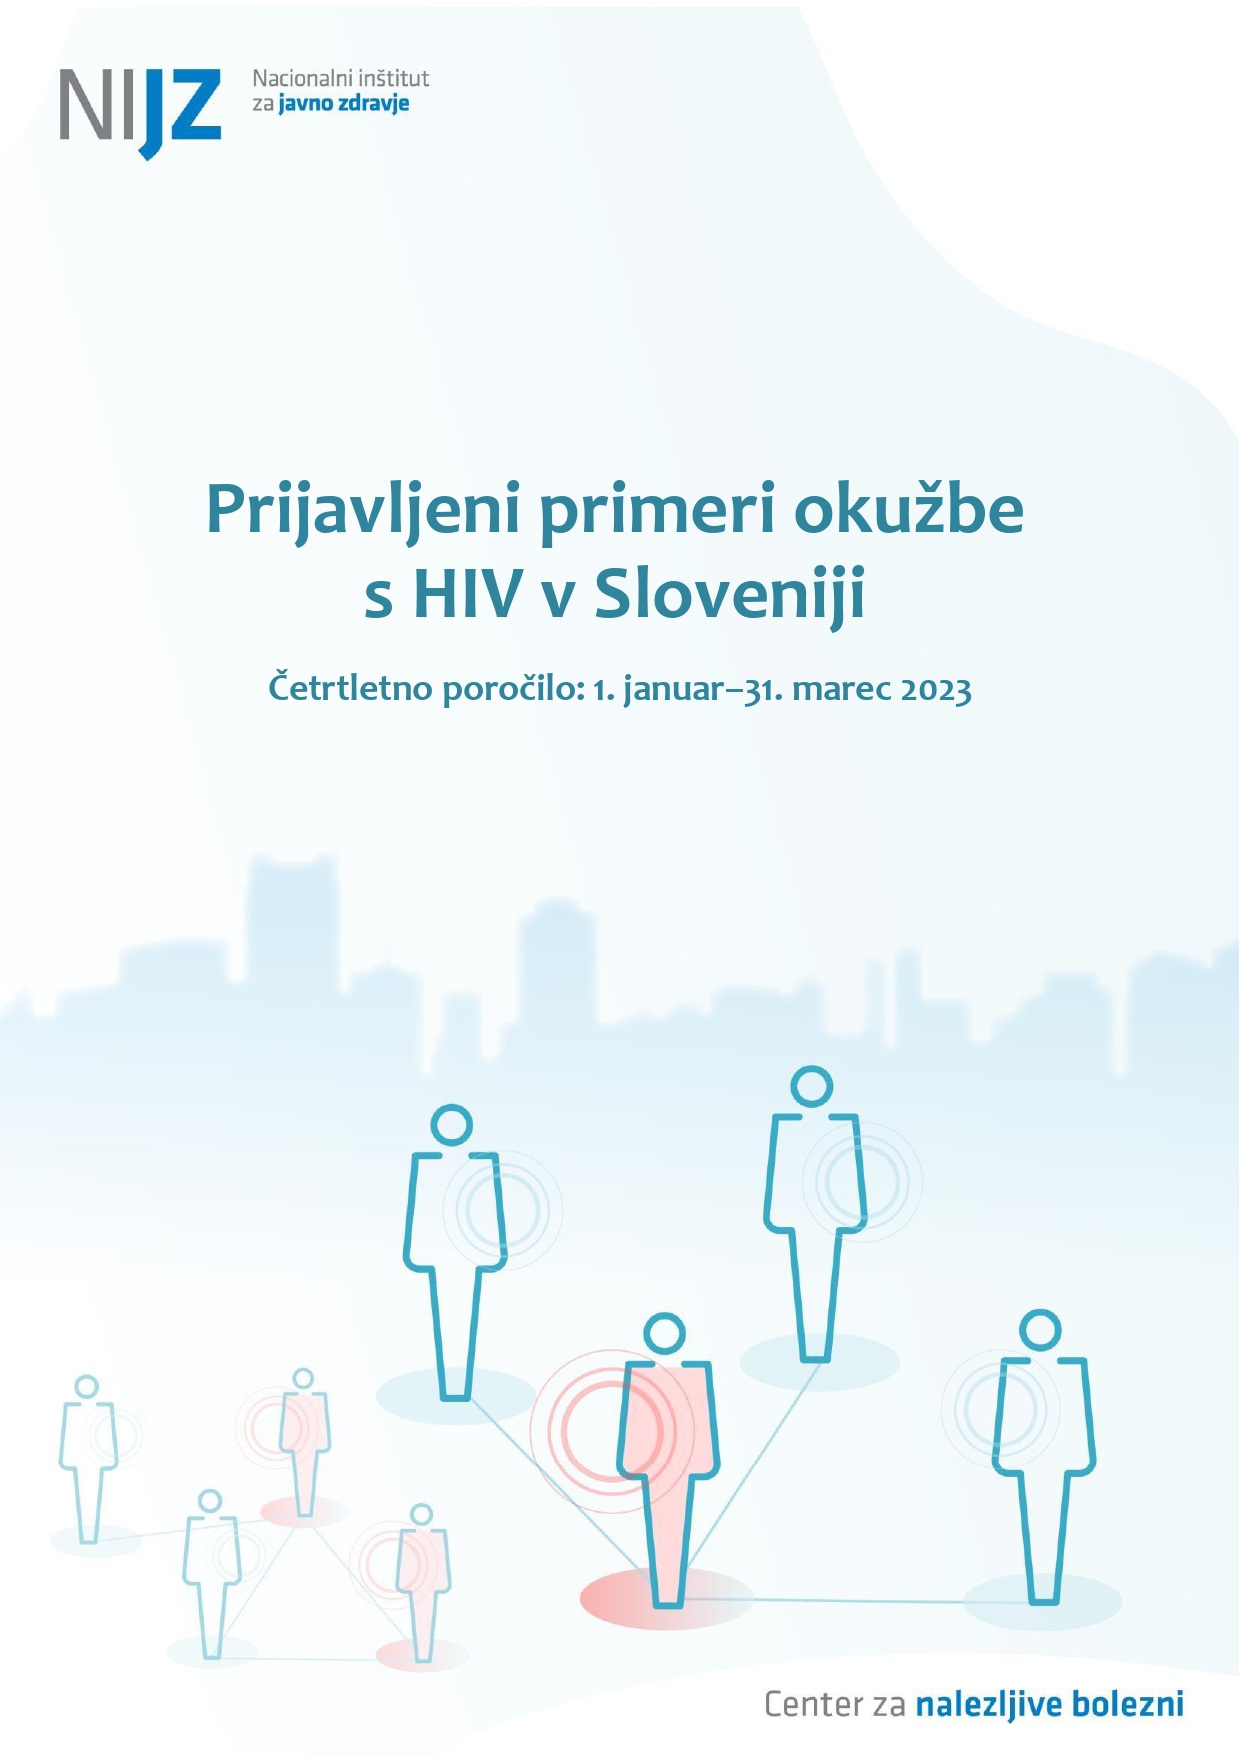 Prijavljeni primeri okužbe s HIV v Sloveniji, četrtletno poročilo, 1. januar–31. marec 2023